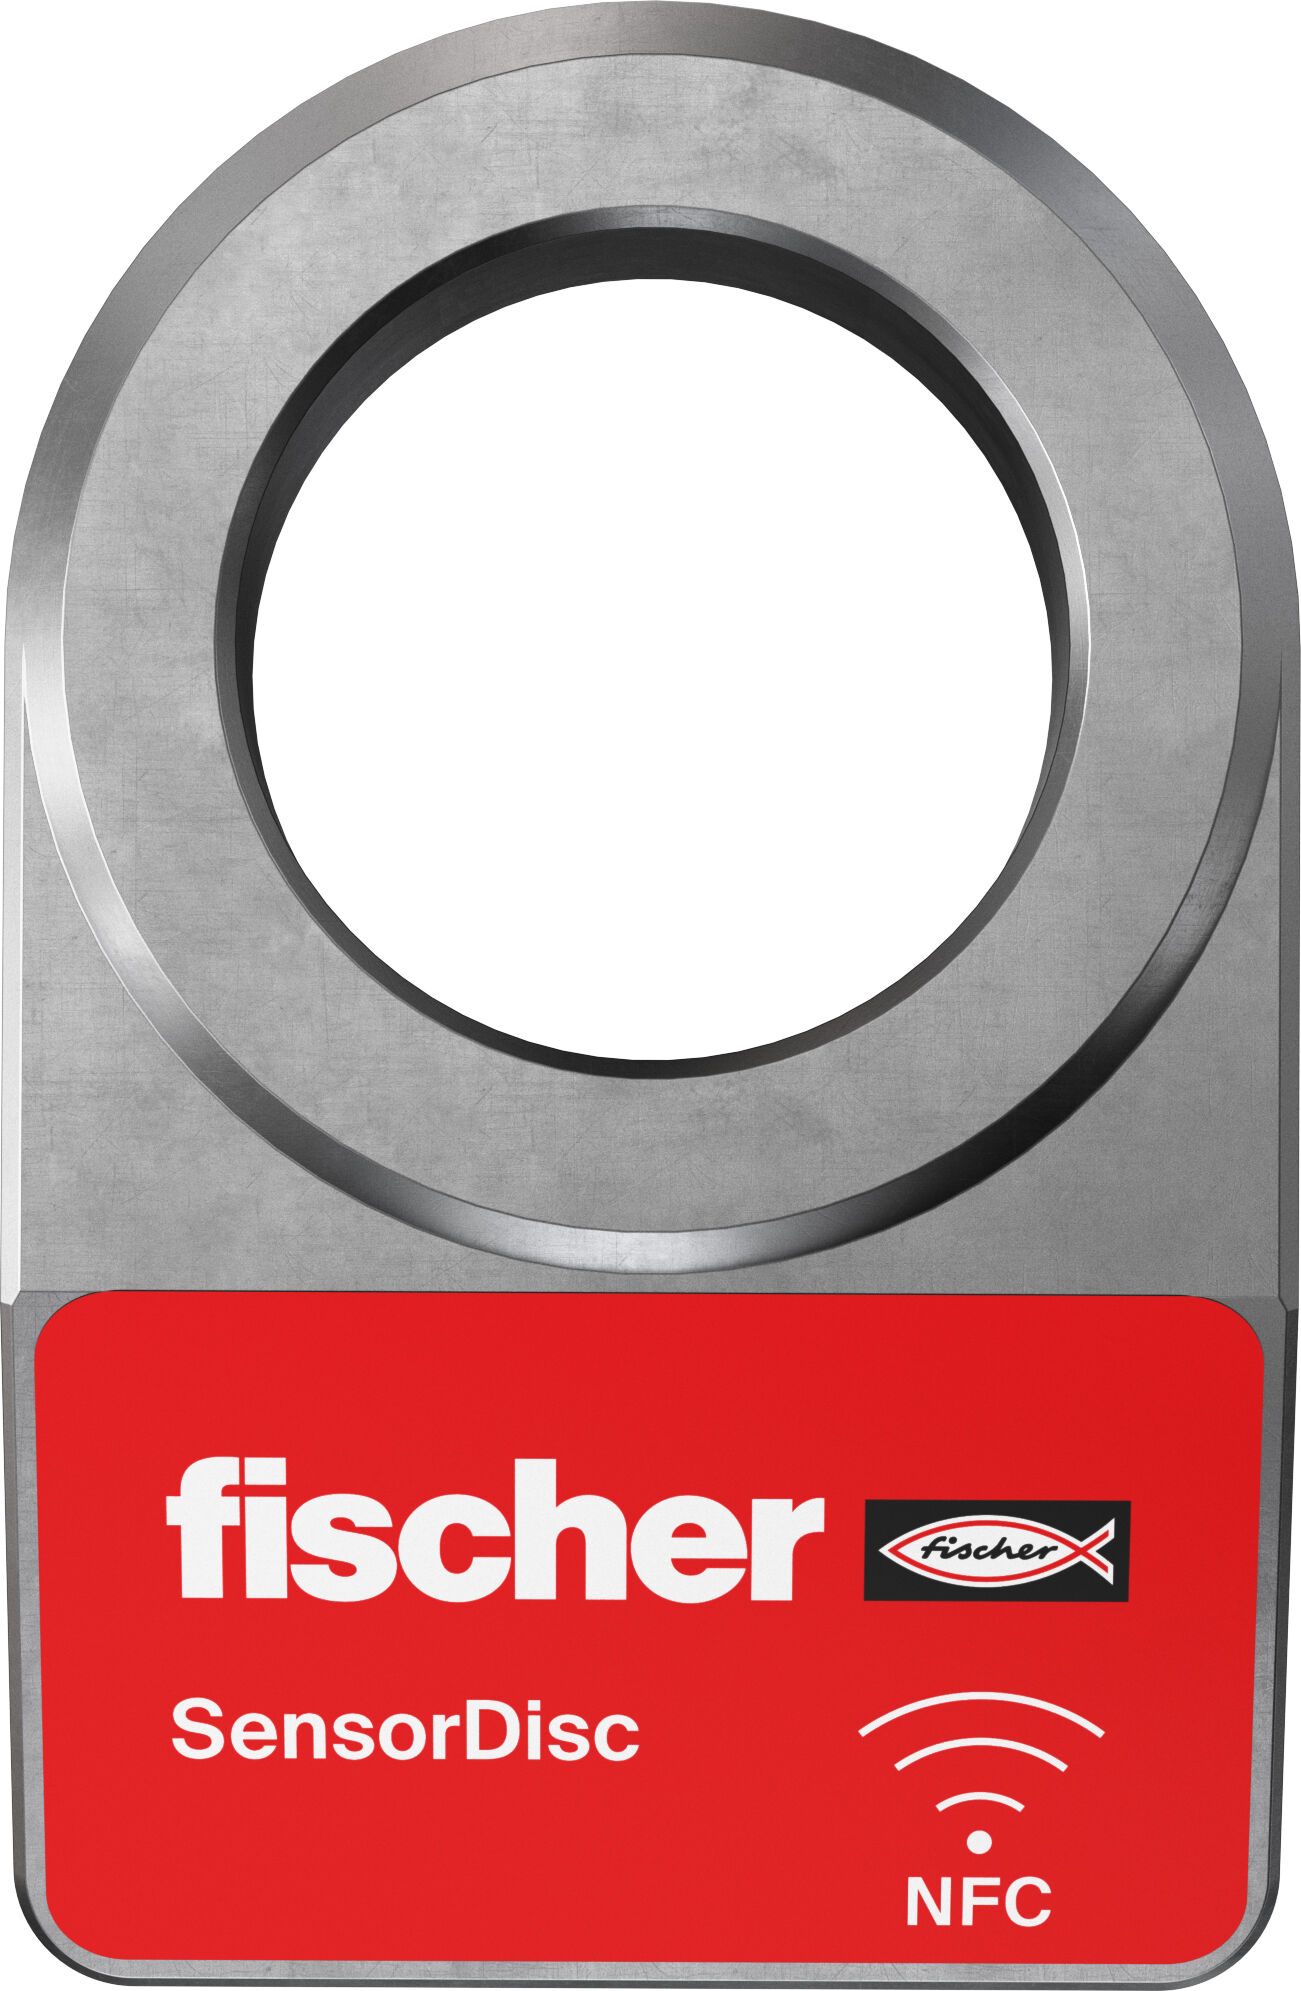 international fischer - Products